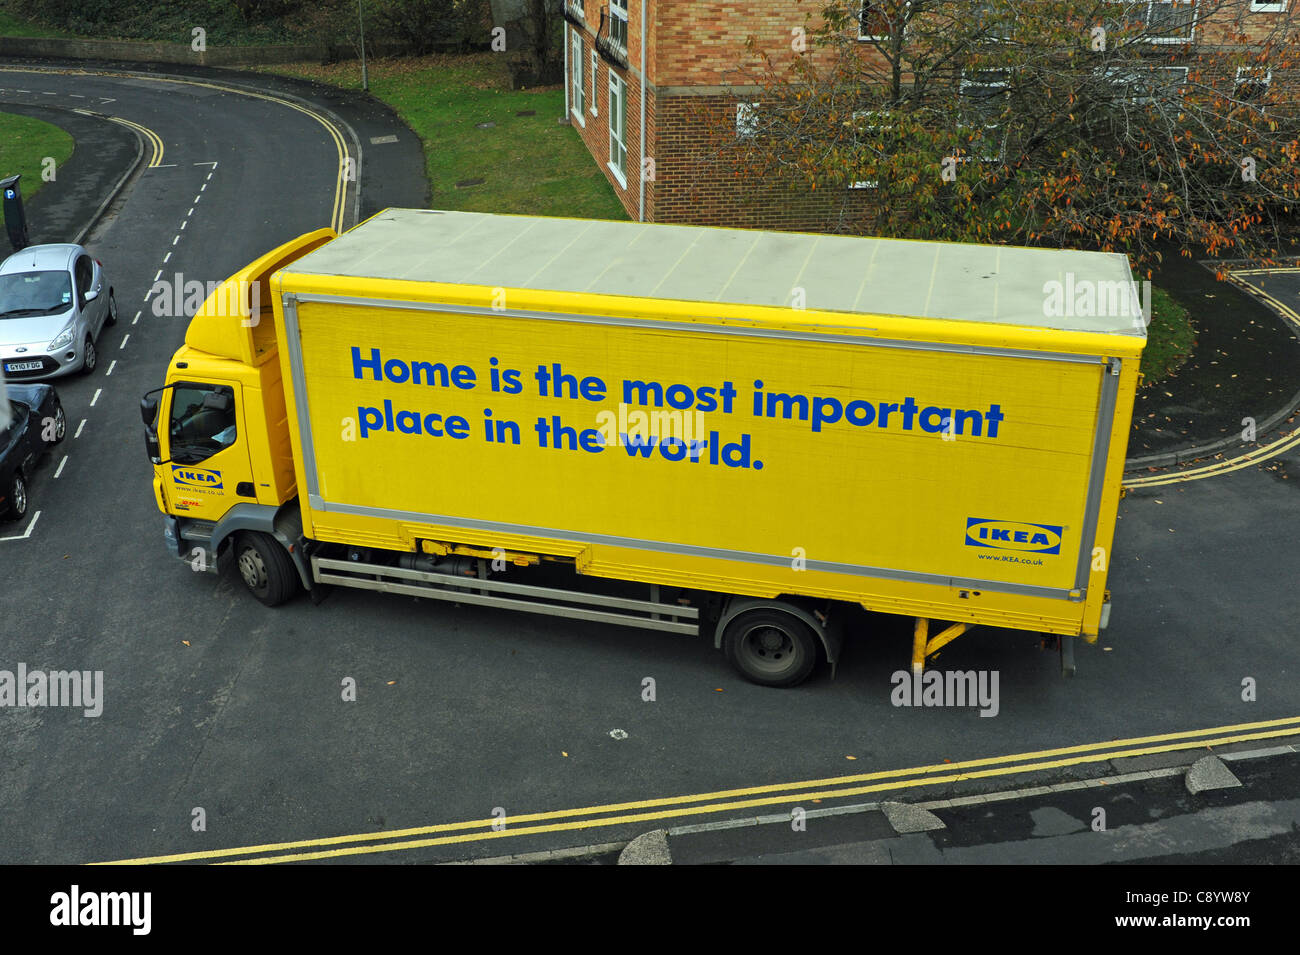 Eine Ikea-Lieferung frei Haus-LKW verhandelt enge Straßen in Brighton UK  Stockfotografie - Alamy